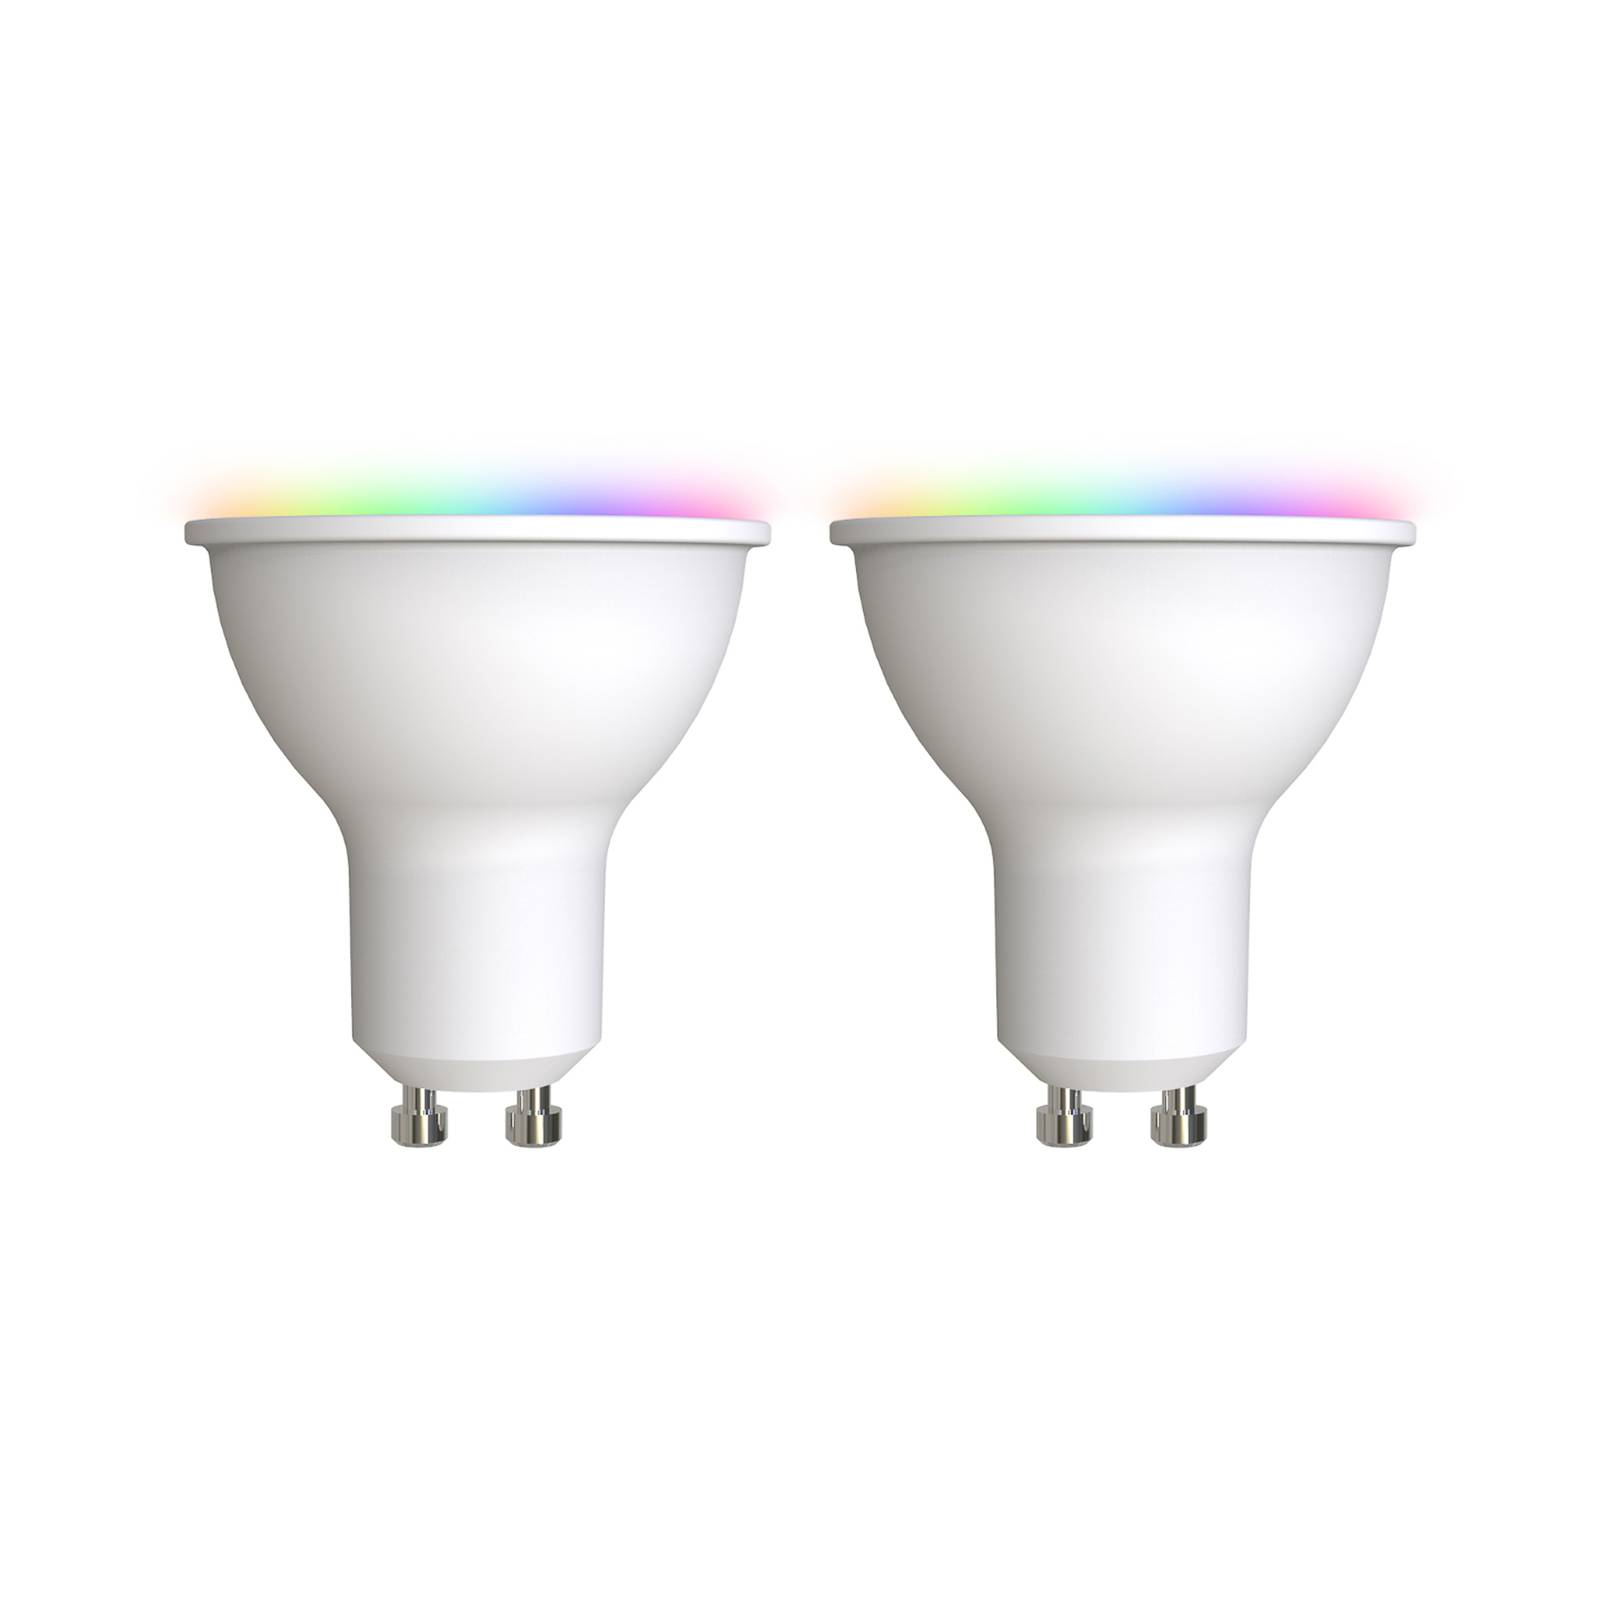 Prios LED-GU10 plast 4,7W RGBW WLAN opal 2stk